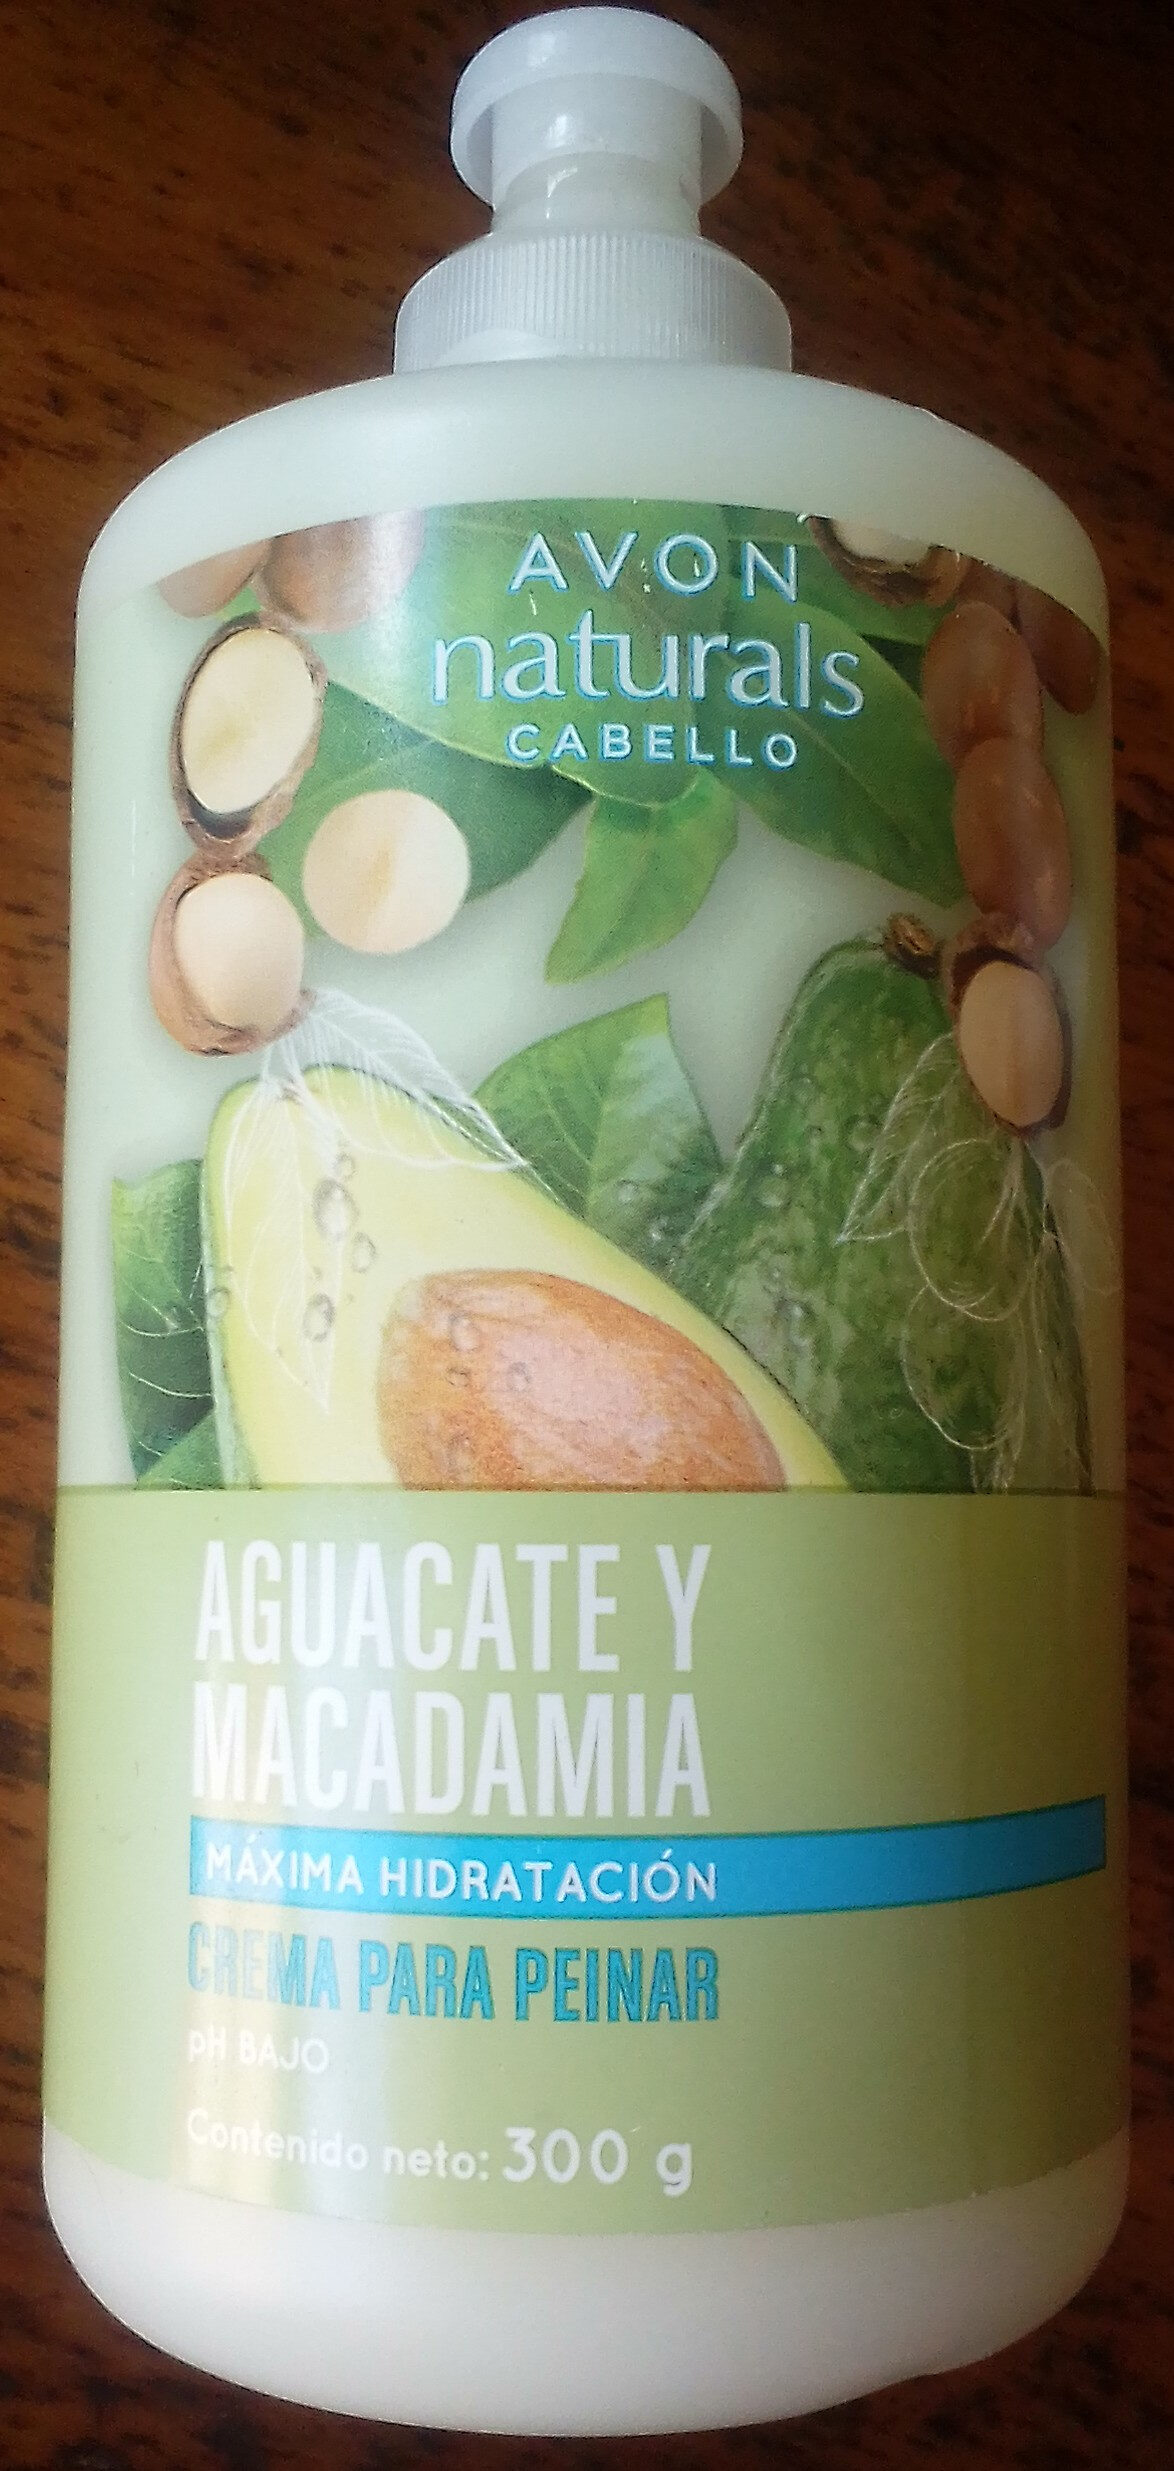 Avon Naturales Cabello Aguacate y Macadamia Maxima Hidratación Crema para Peinar - Tuote - en